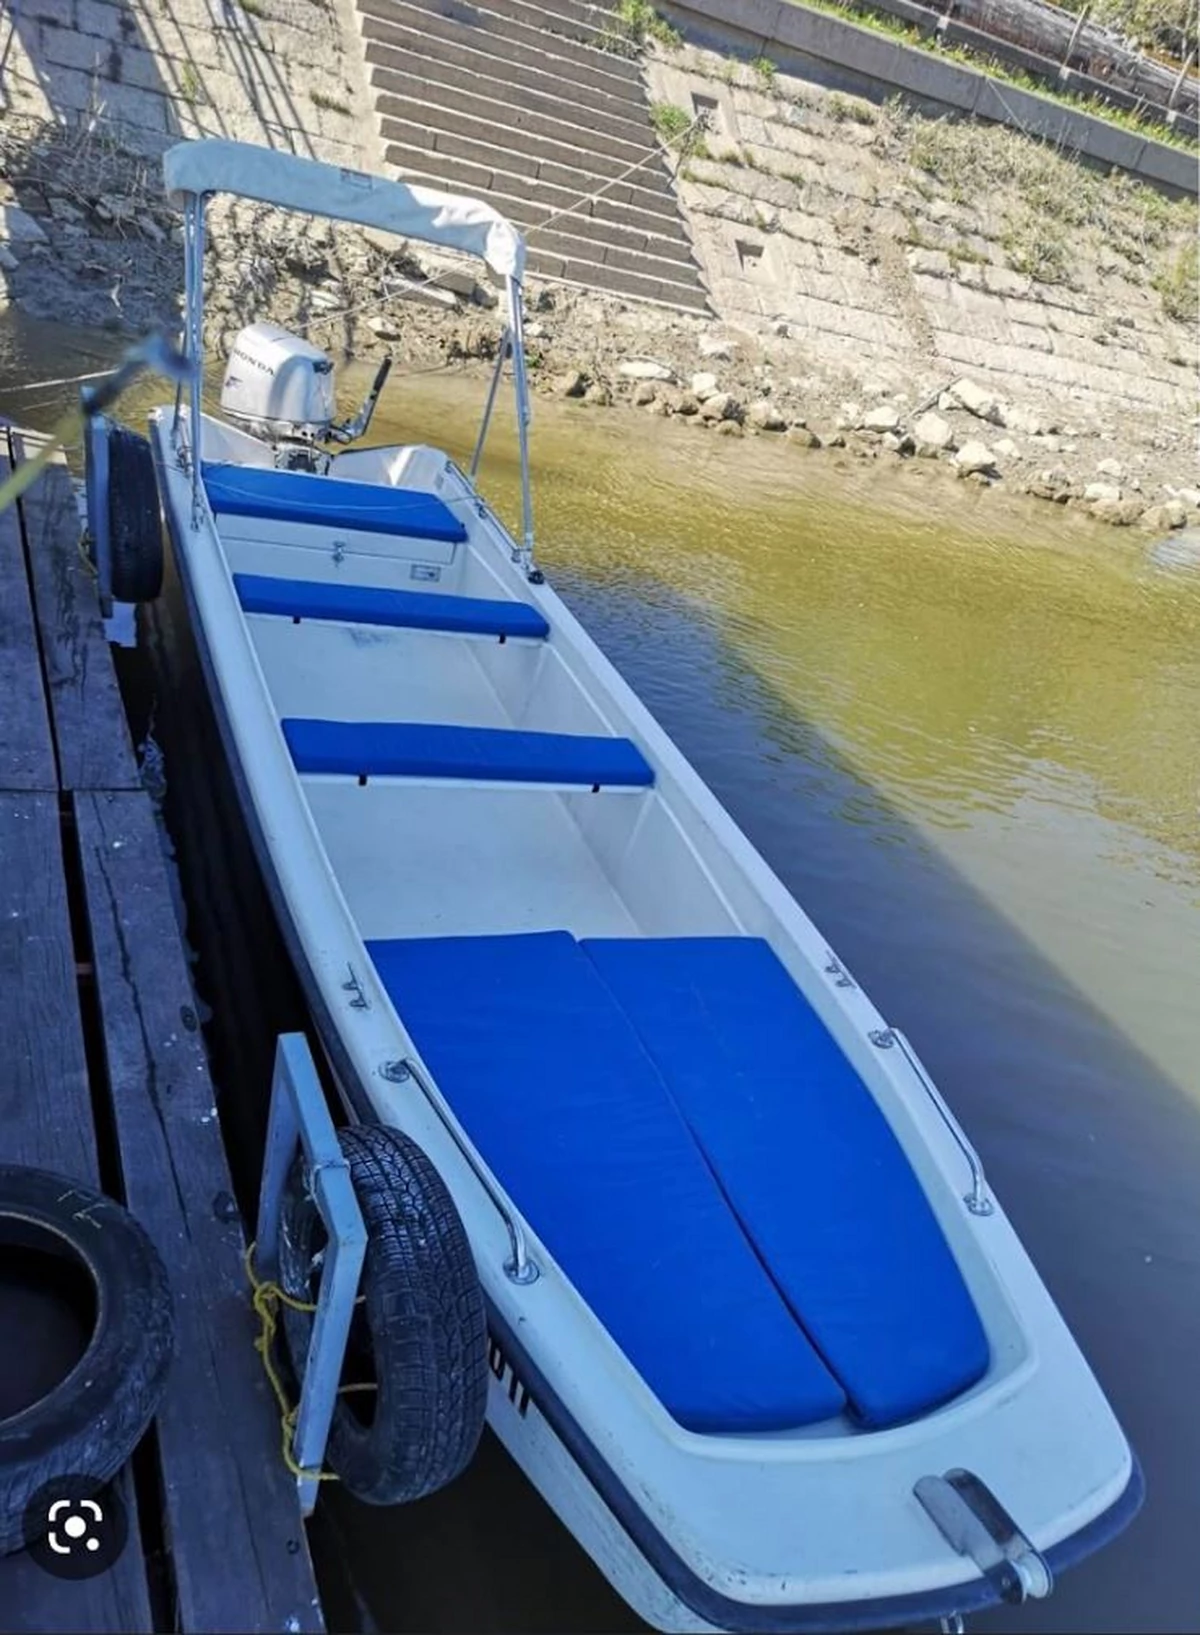 NOVI DETALJI TRAGEDIJE NA DUNAVU: Pijani sjeli u plastični čamac po lošem  vremenu? | Slobodna Bosna